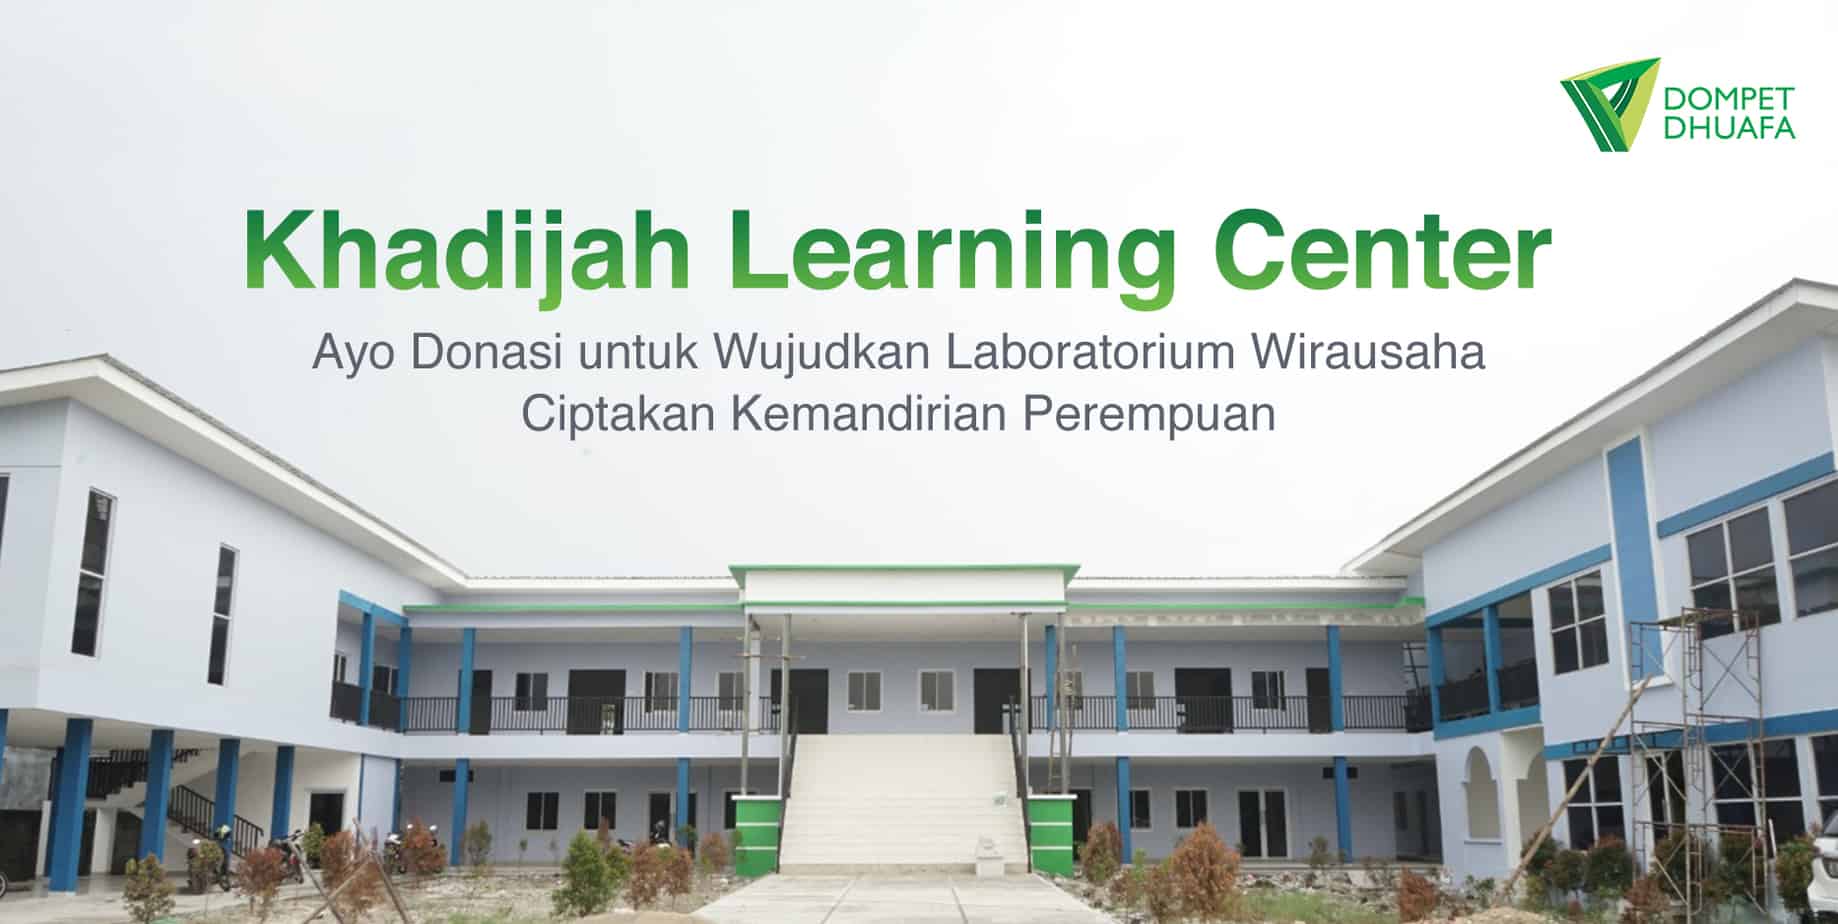 Khadijah-Learning-Center-banner